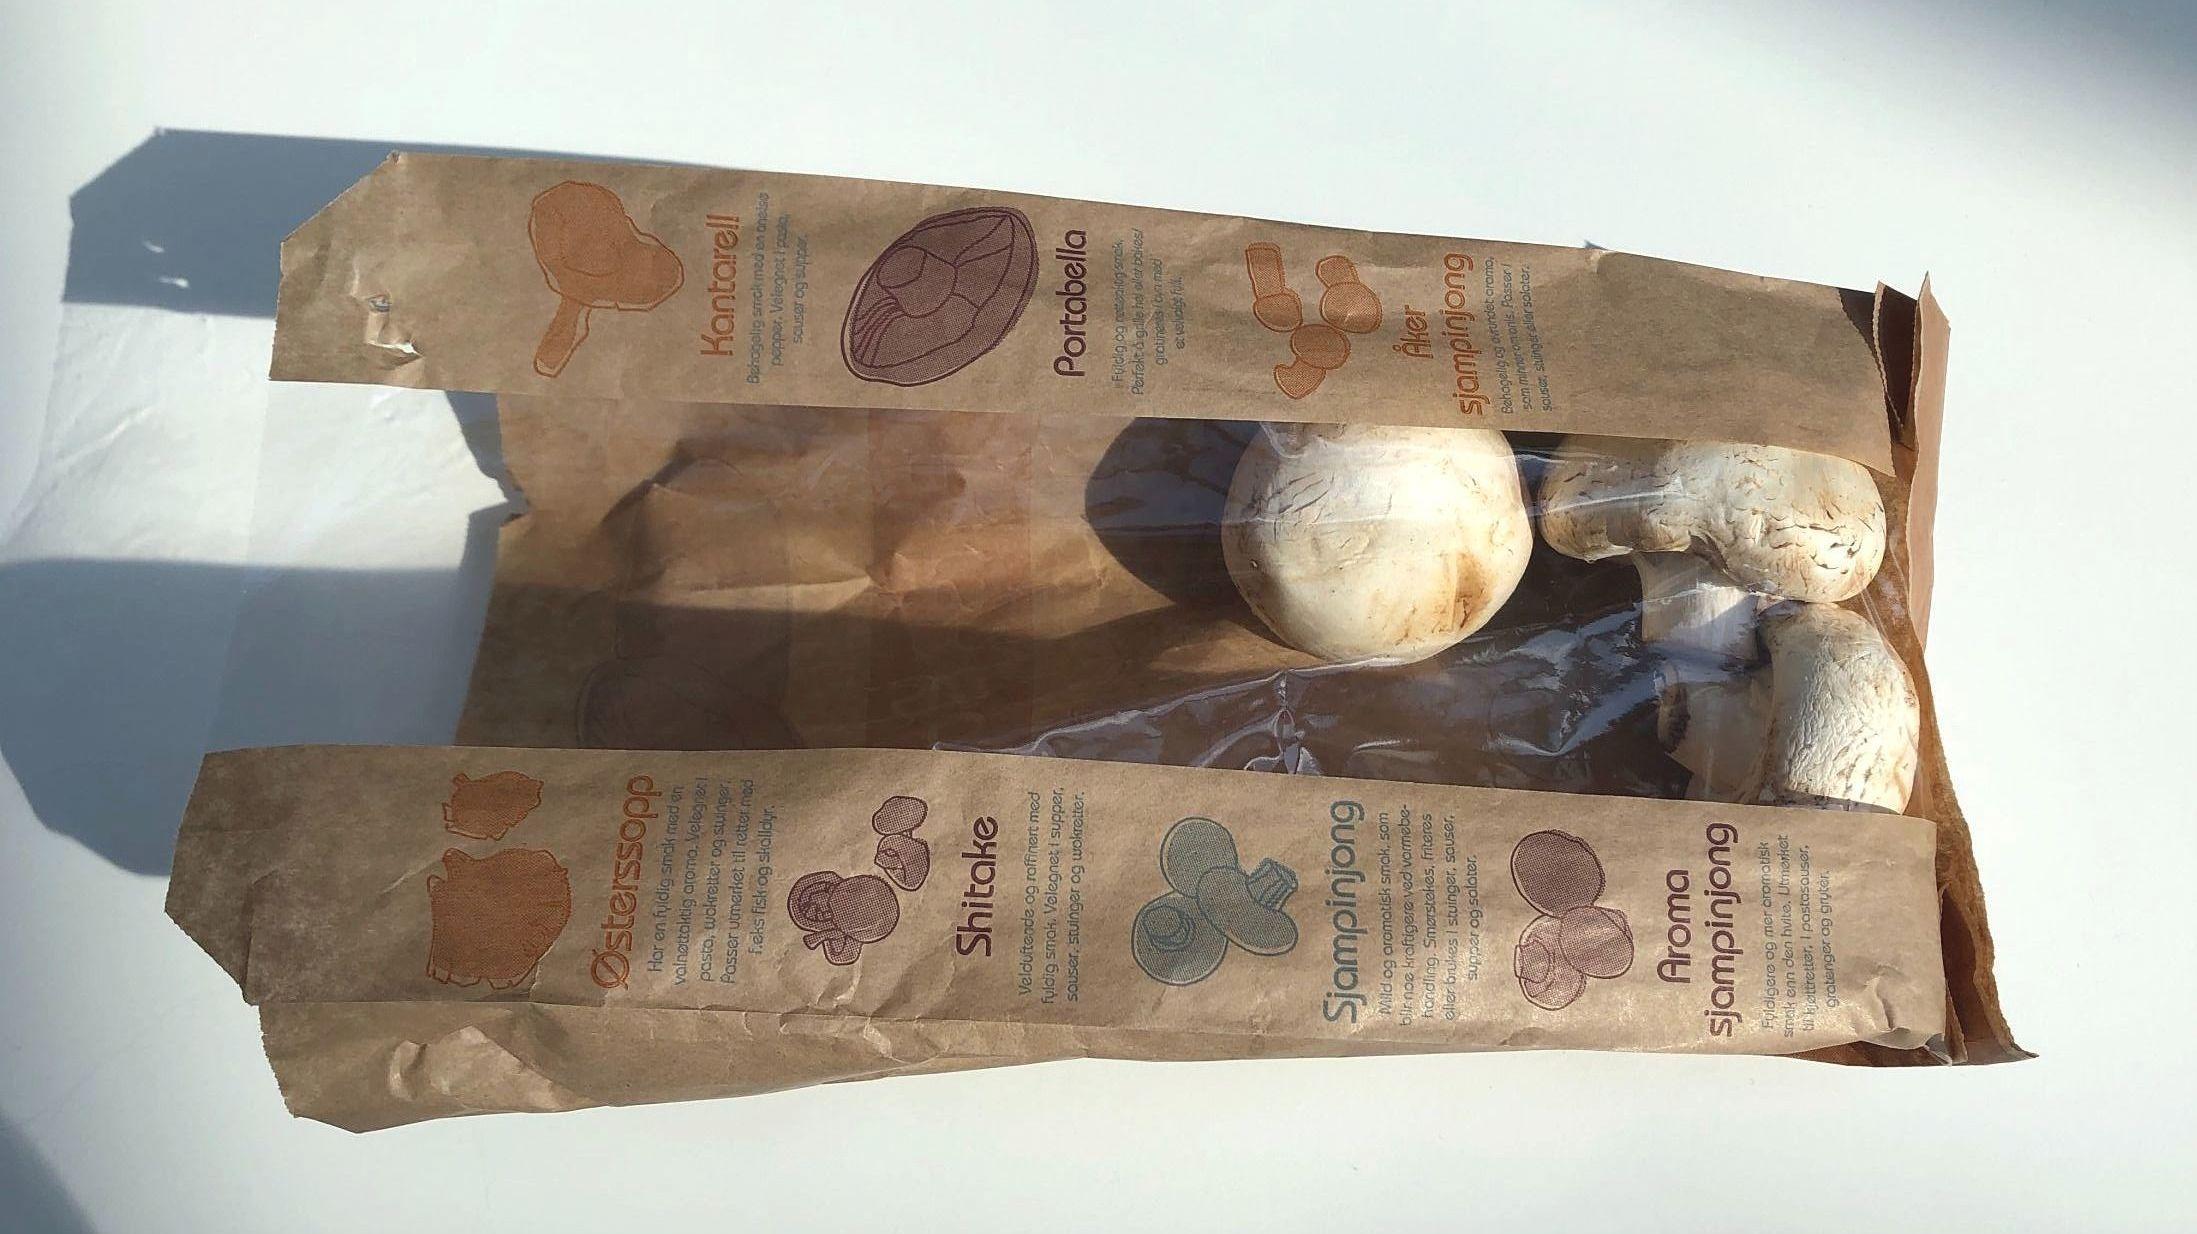 VANSKELIG: De klassiske sopp-posene som selges i de fleste dagligvarekjeder består av både papir og plast. Det gjør dem vanskelige å resirkulere. Foto: Toini Thanem/VG